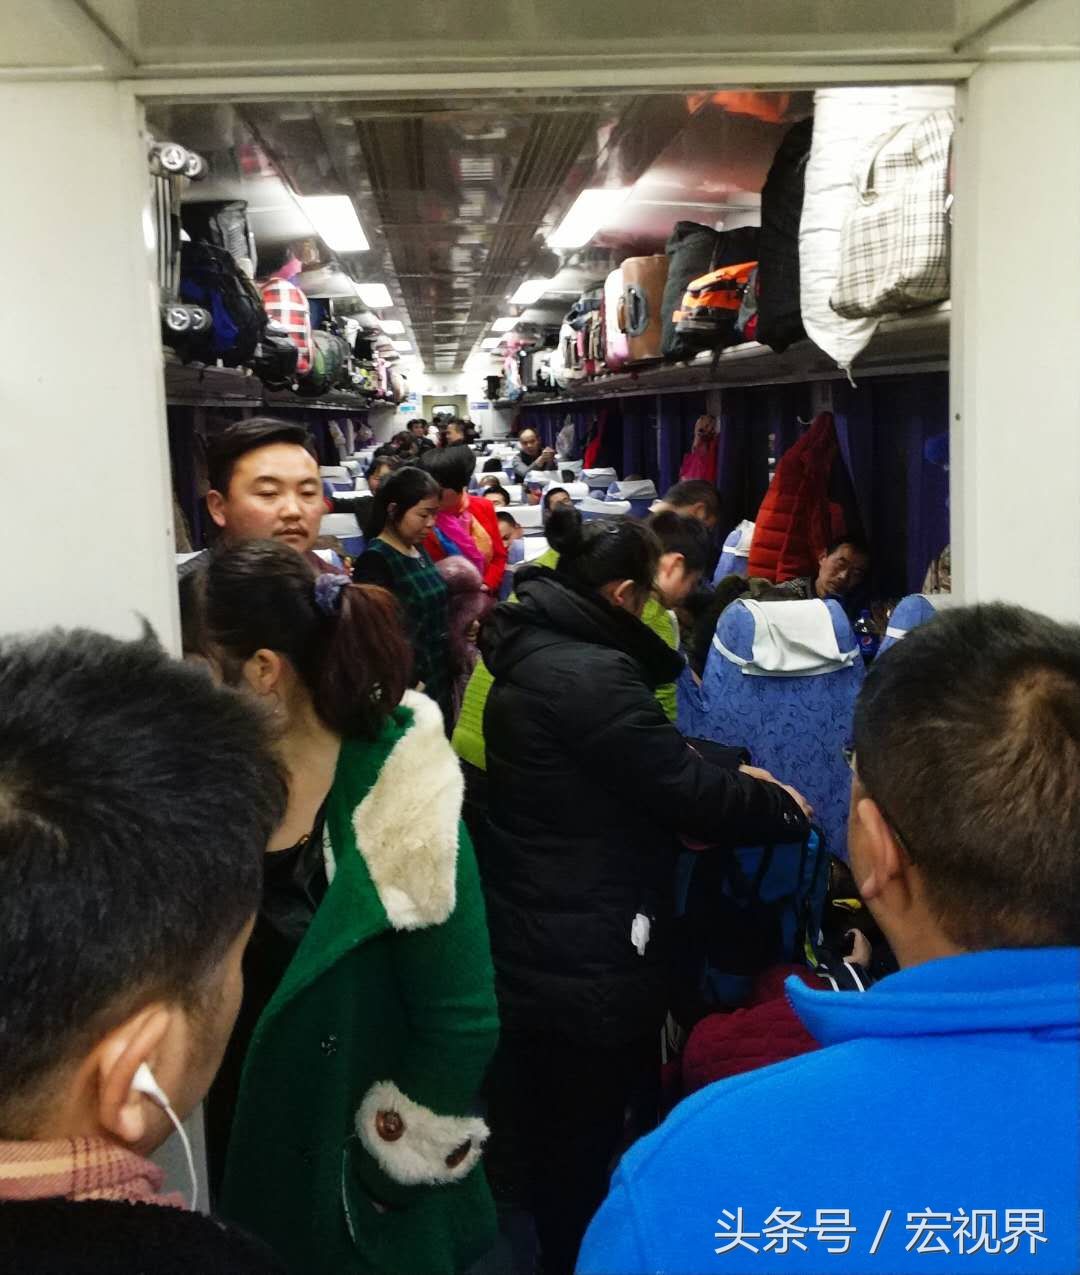 实拍奔驰在大西北火车上的春运人流,图为一节车厢拥挤的旅客.